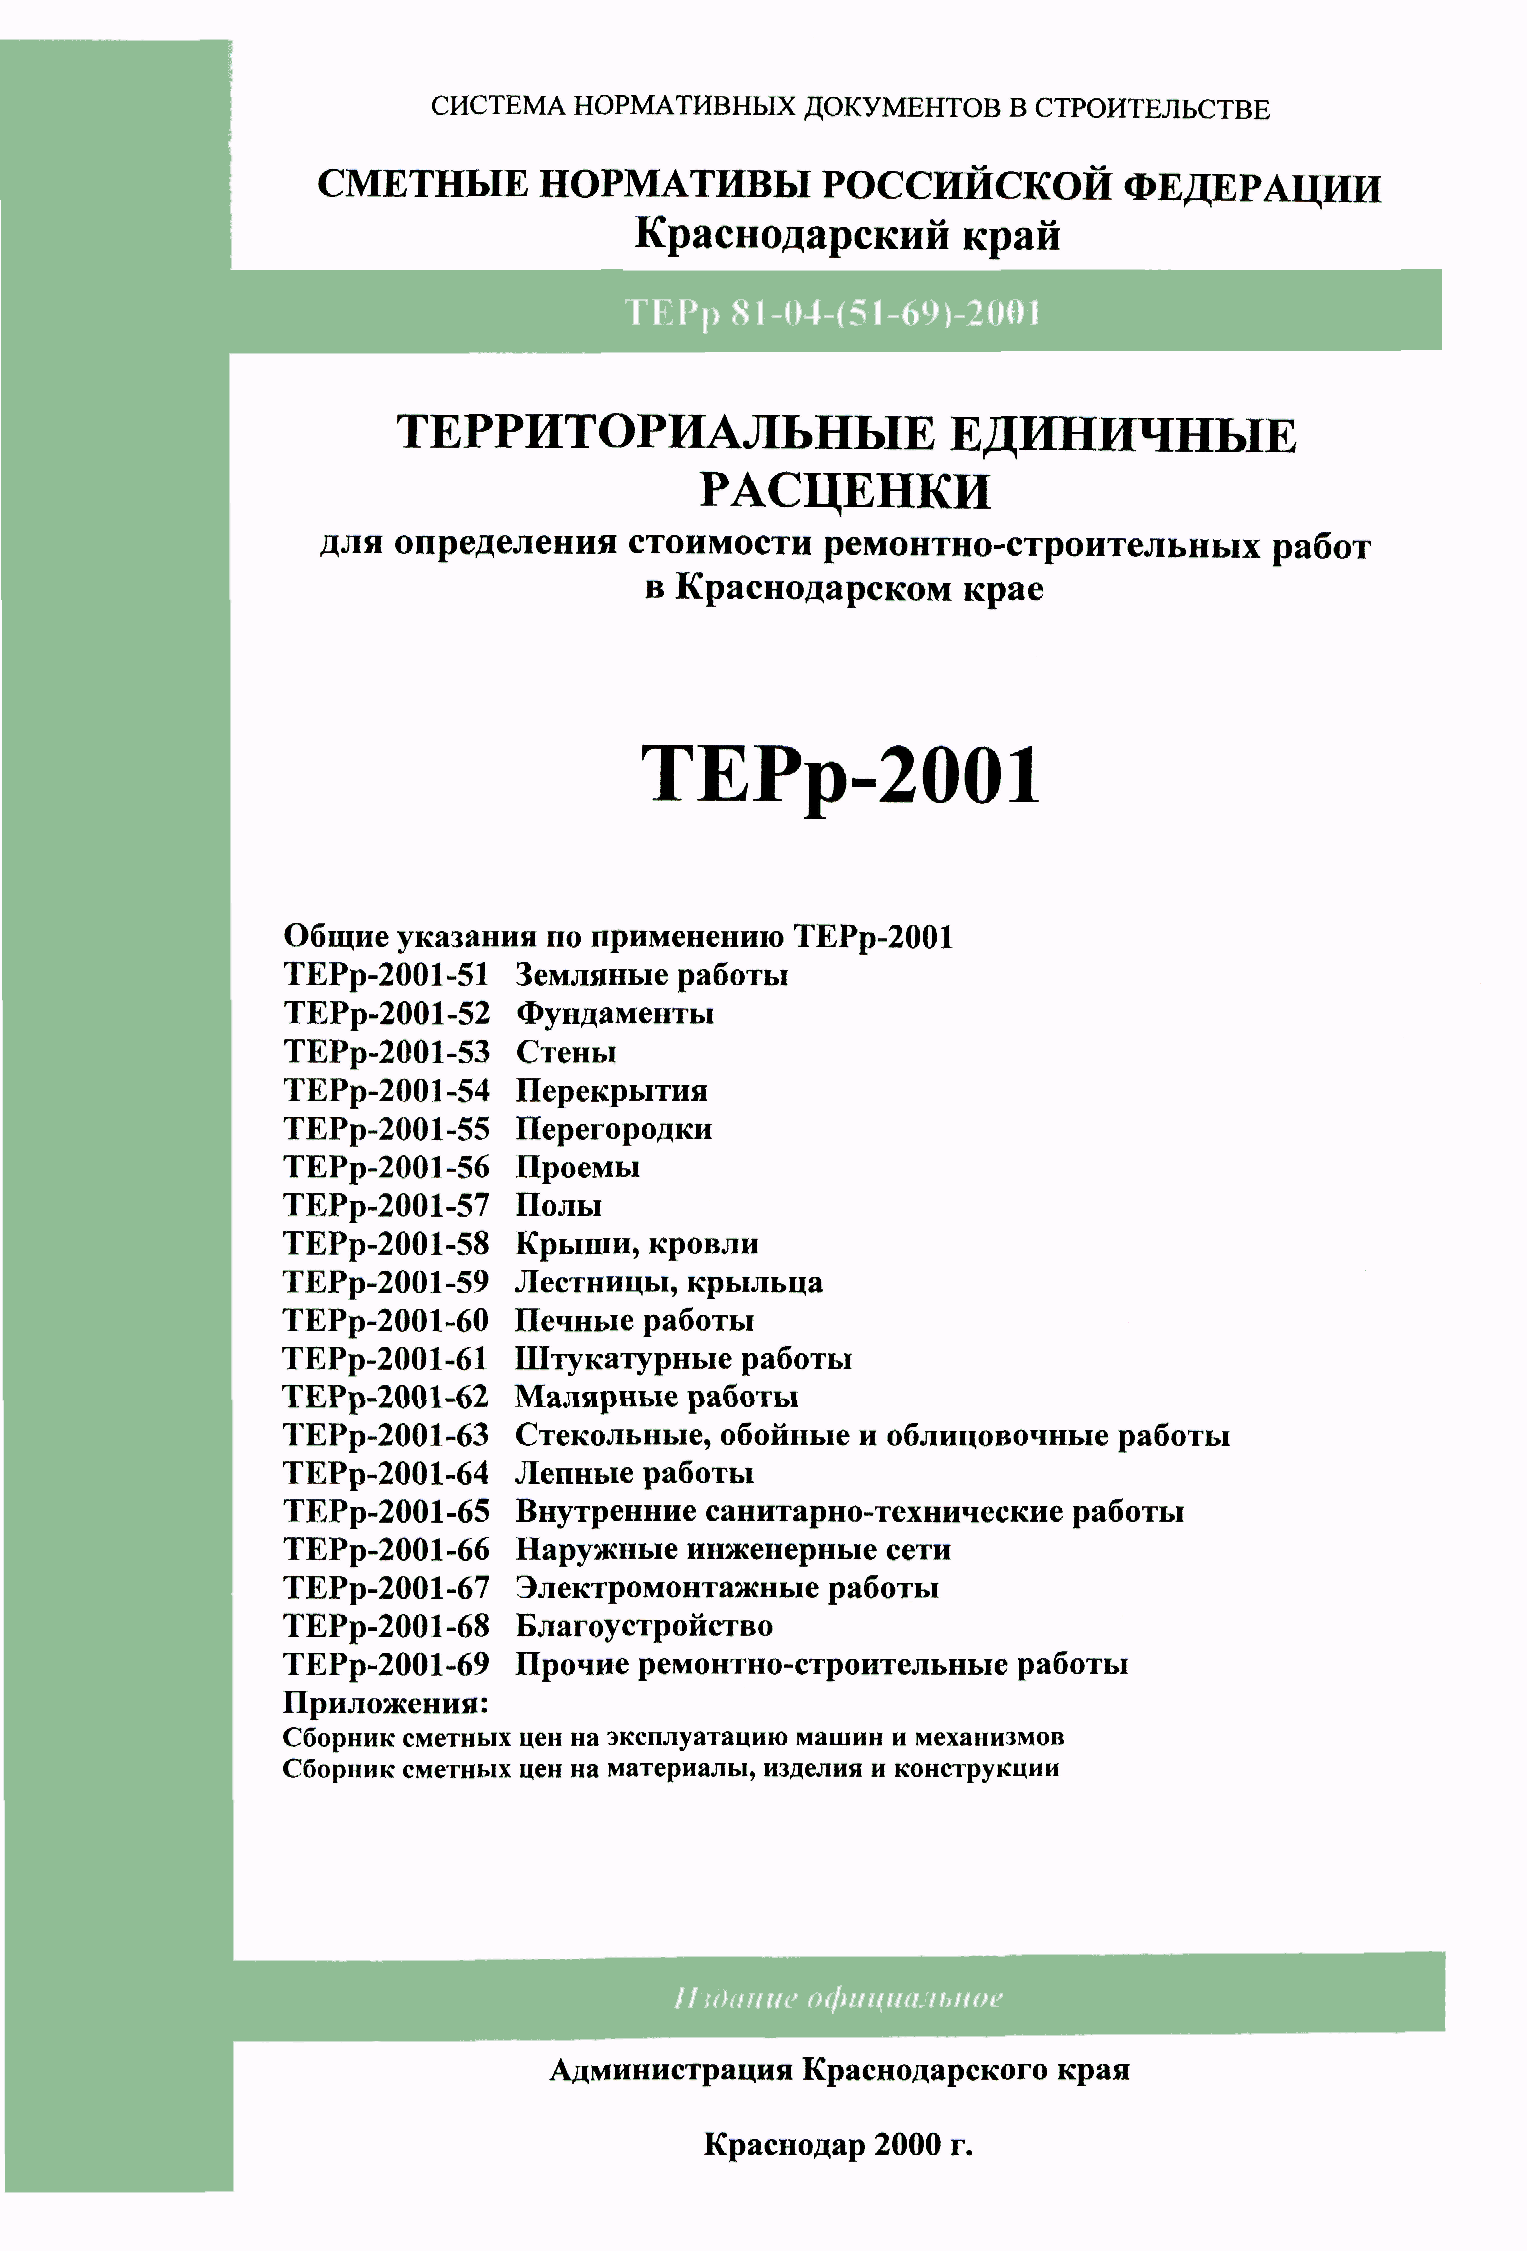 ТЕРр Краснодарского края 2001-54